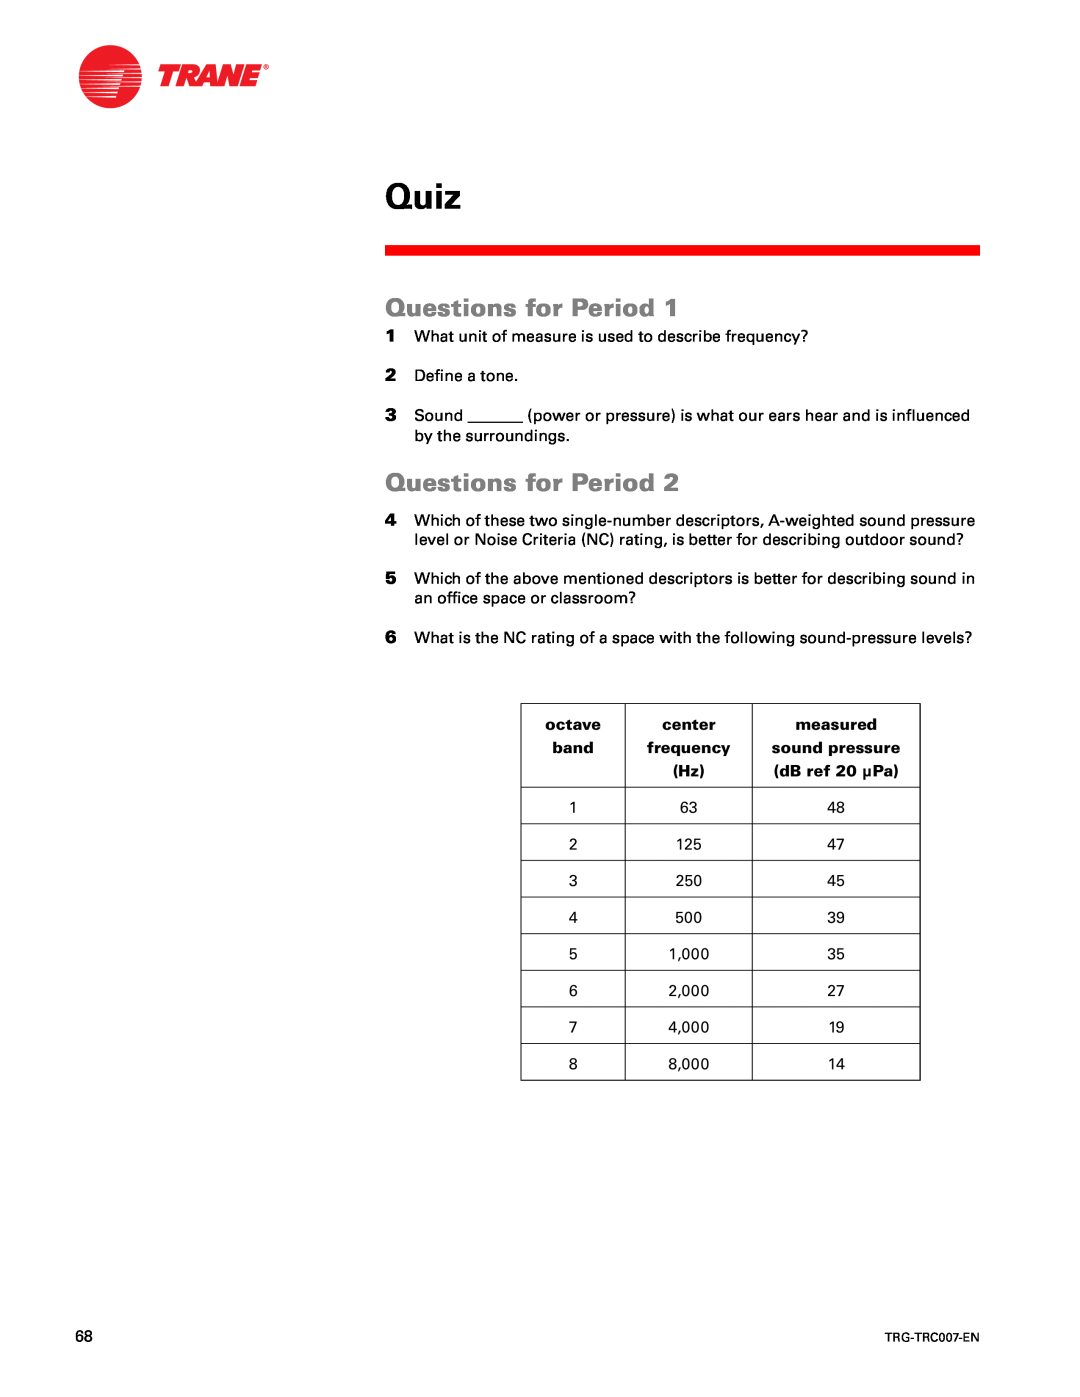 Trane TRG-TRC007-EN manual Quiz, Questions for Period 